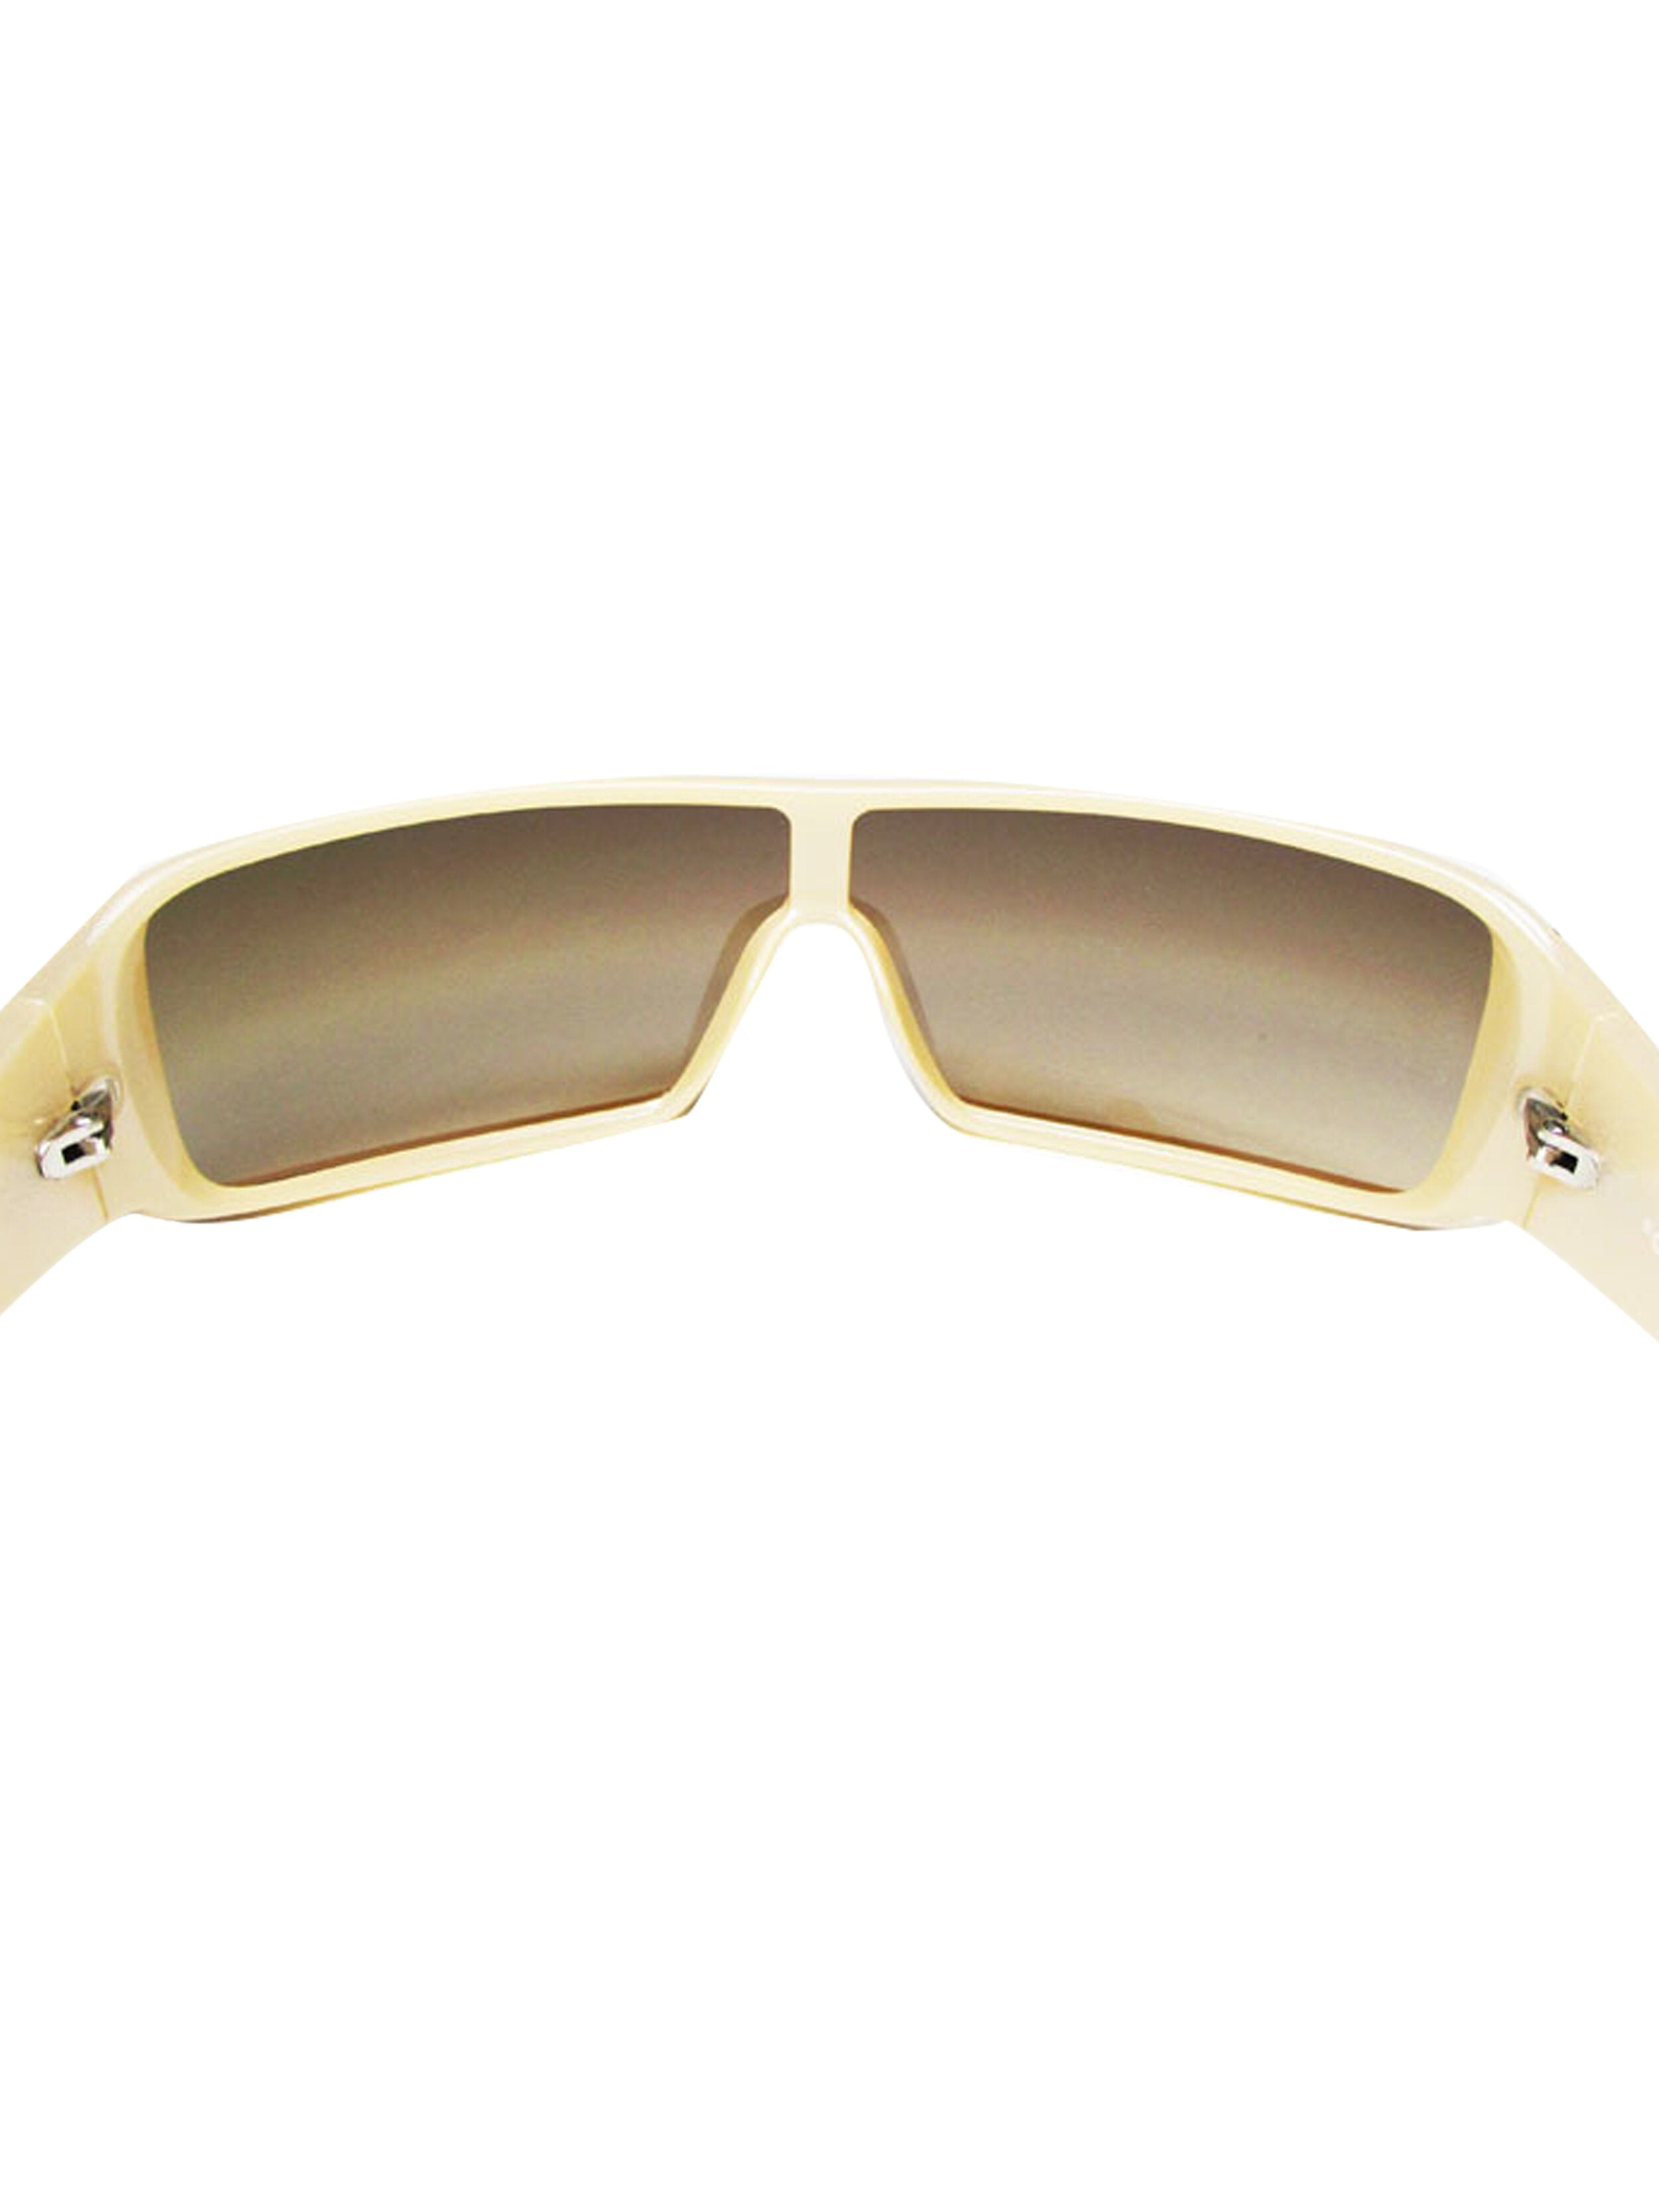 Sunglasses Chanel Black in Plastic - 36047851